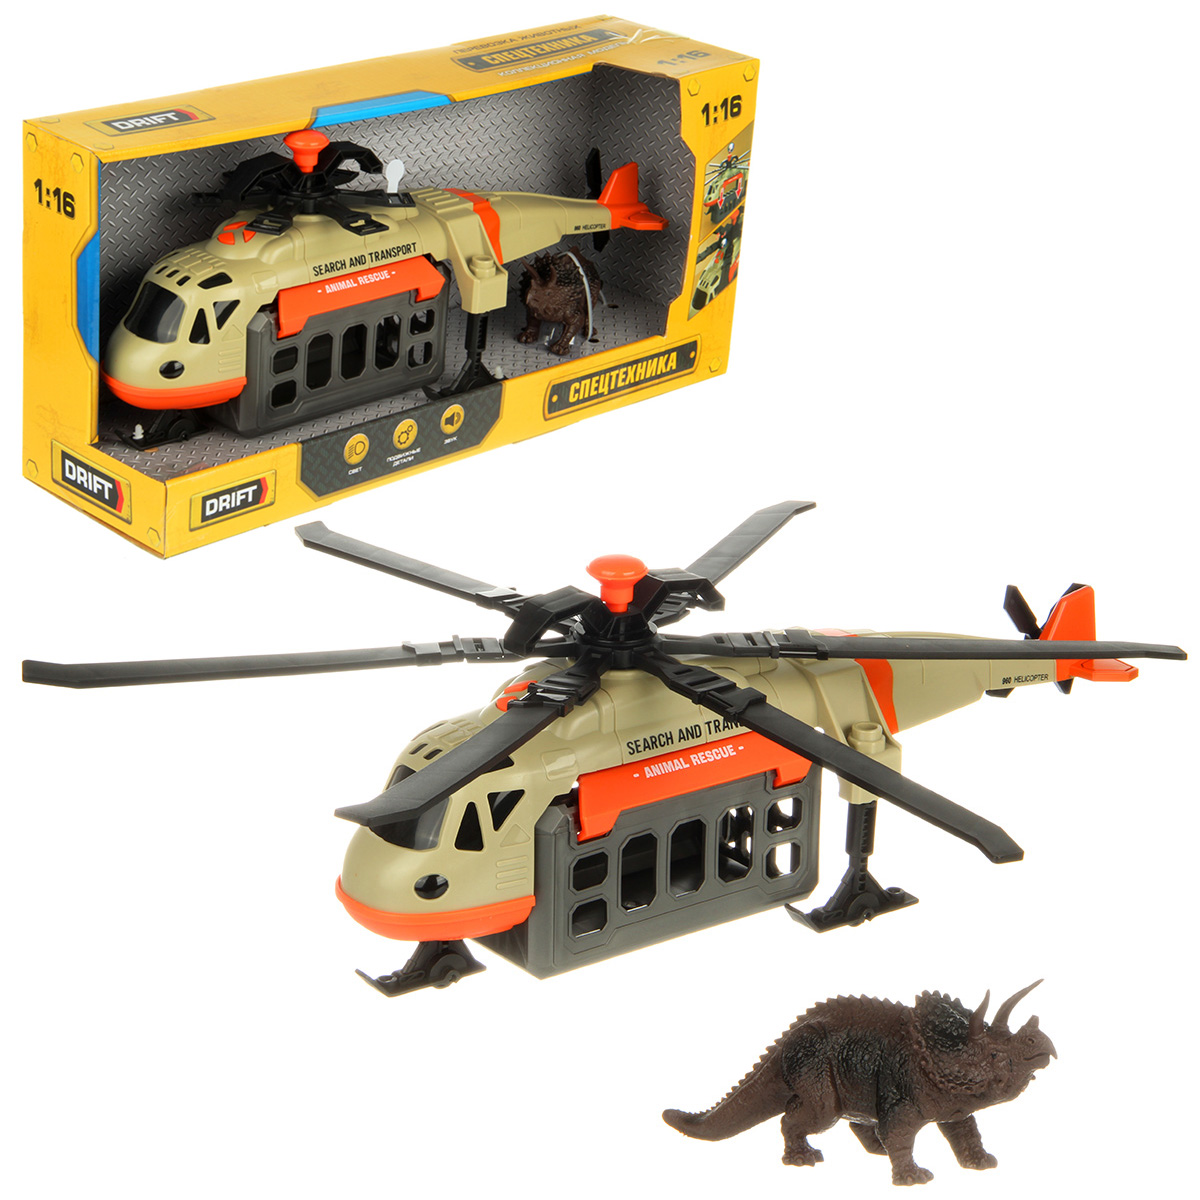 Вертолет игрушечный Drift Перевозка животных 1:16 130978 drift транспортный вертолет 1 16